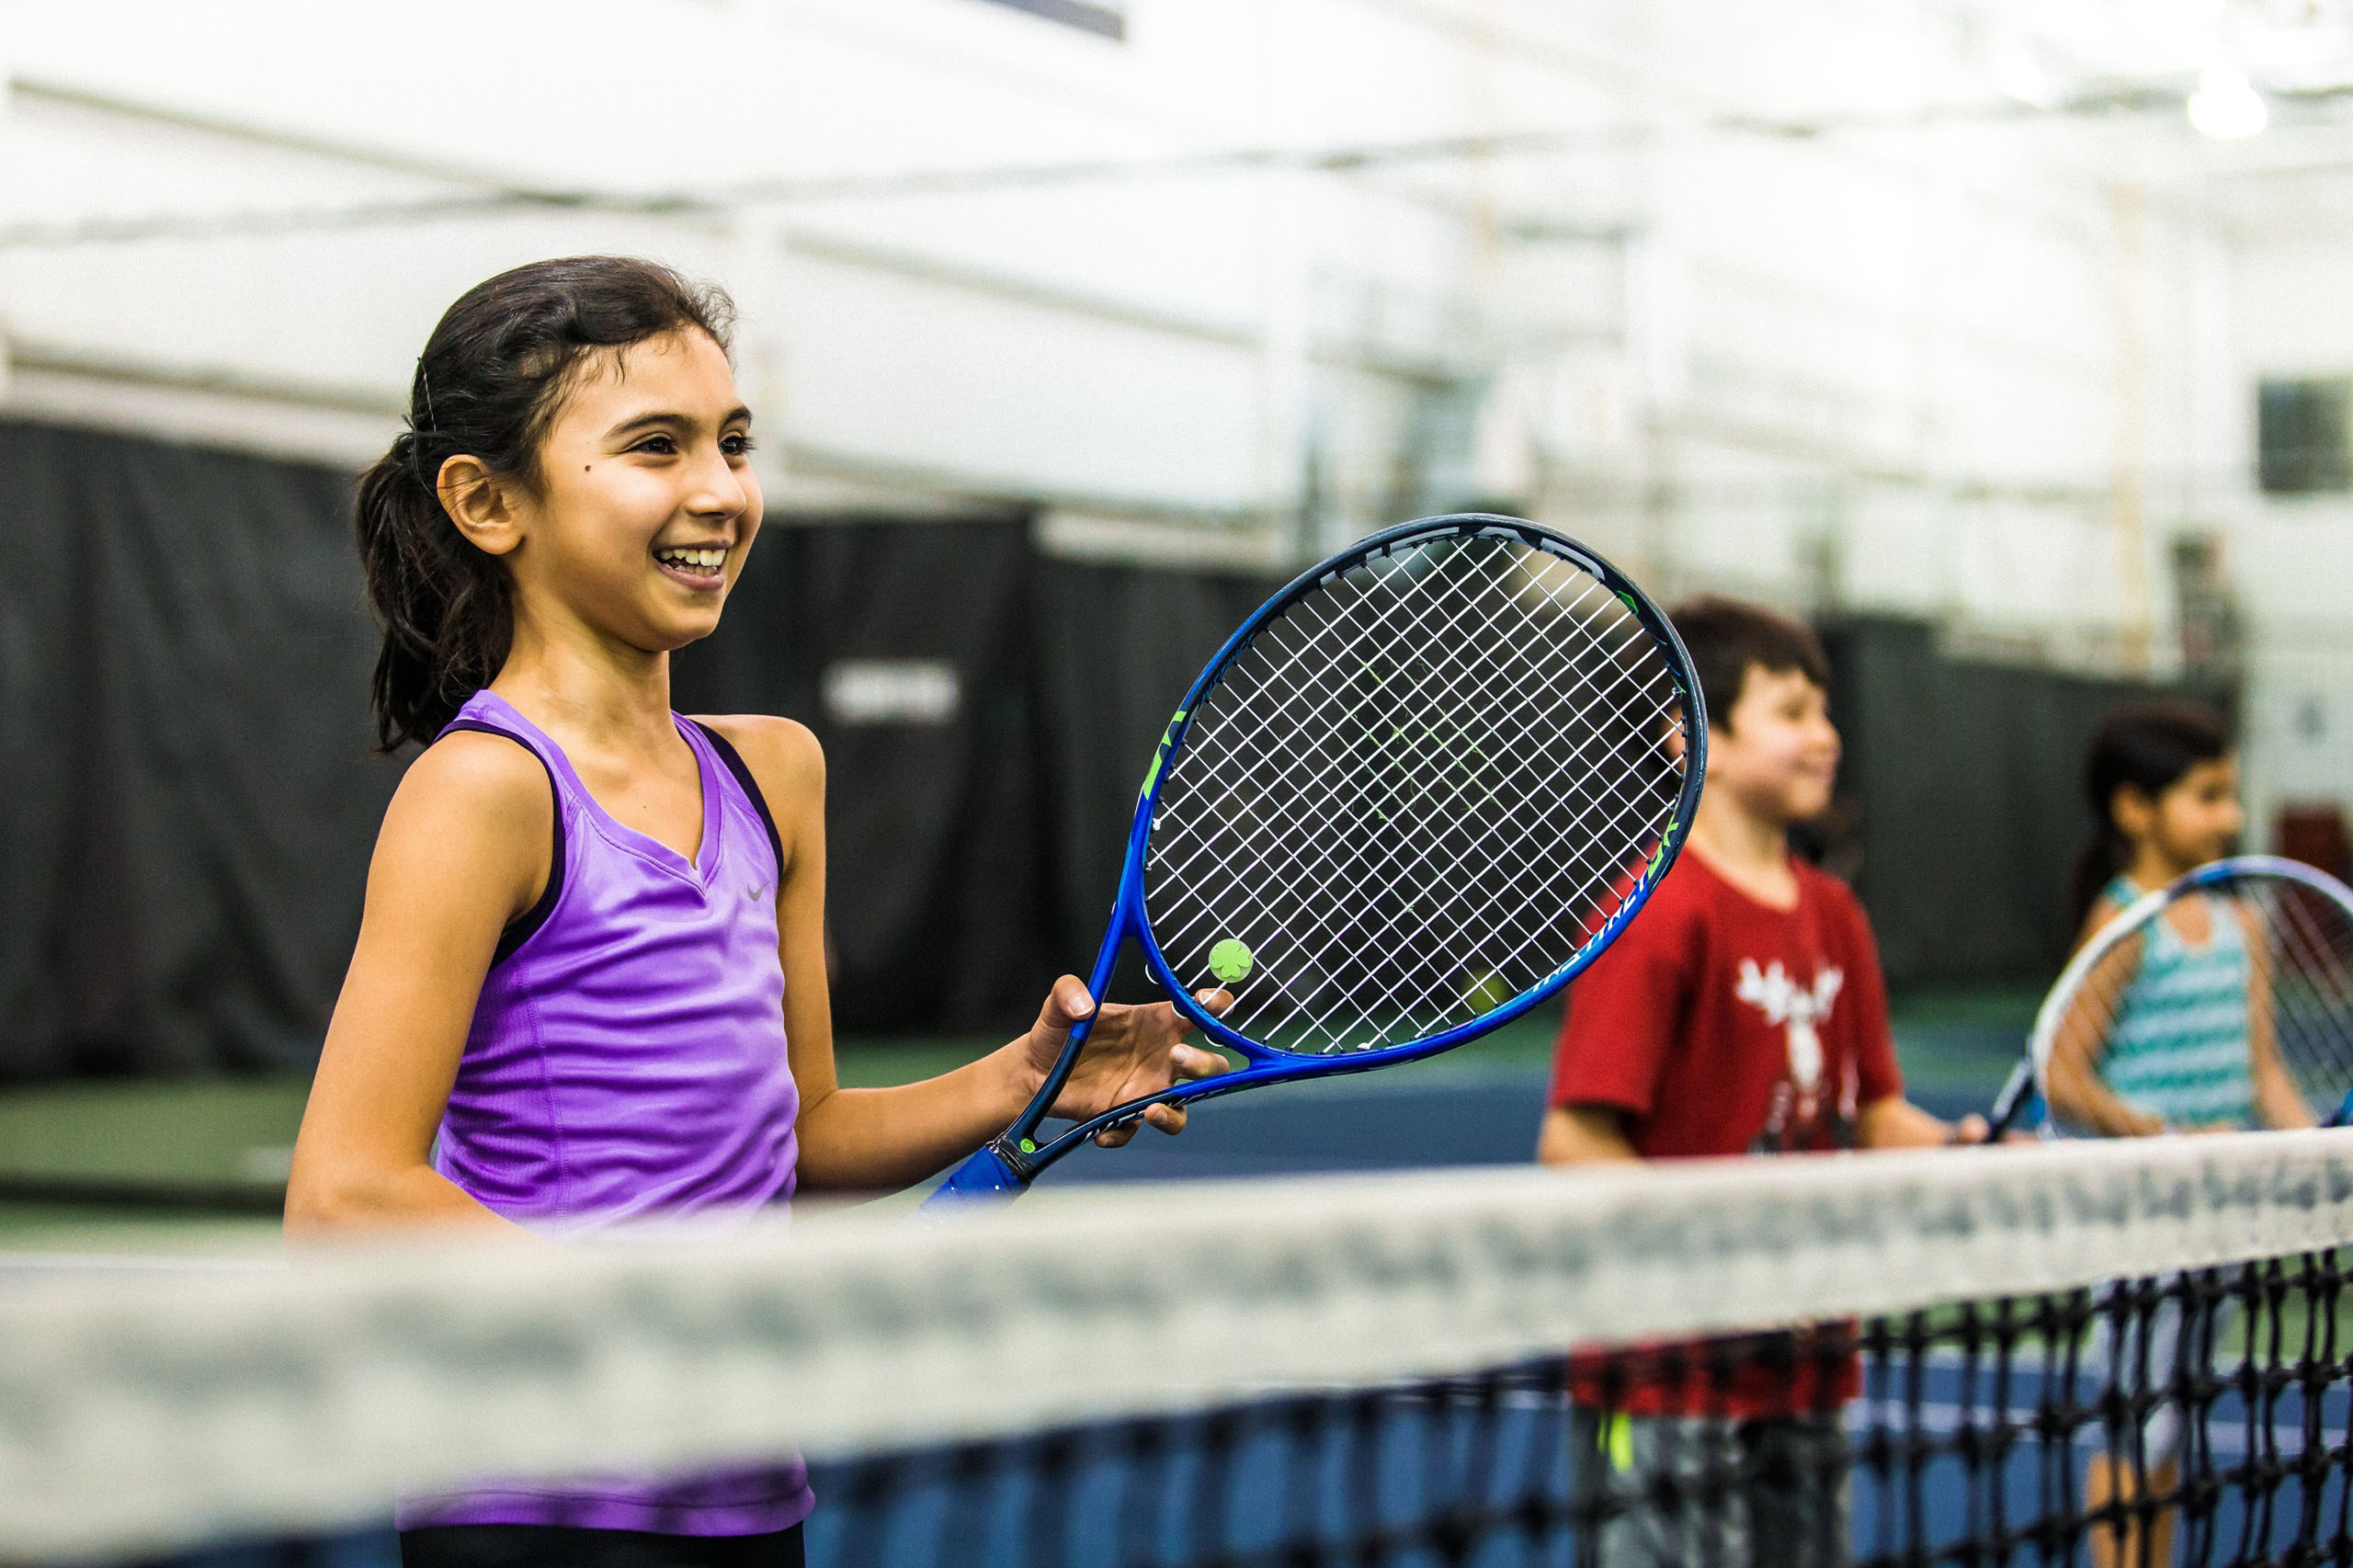 Smiling children on tennis court